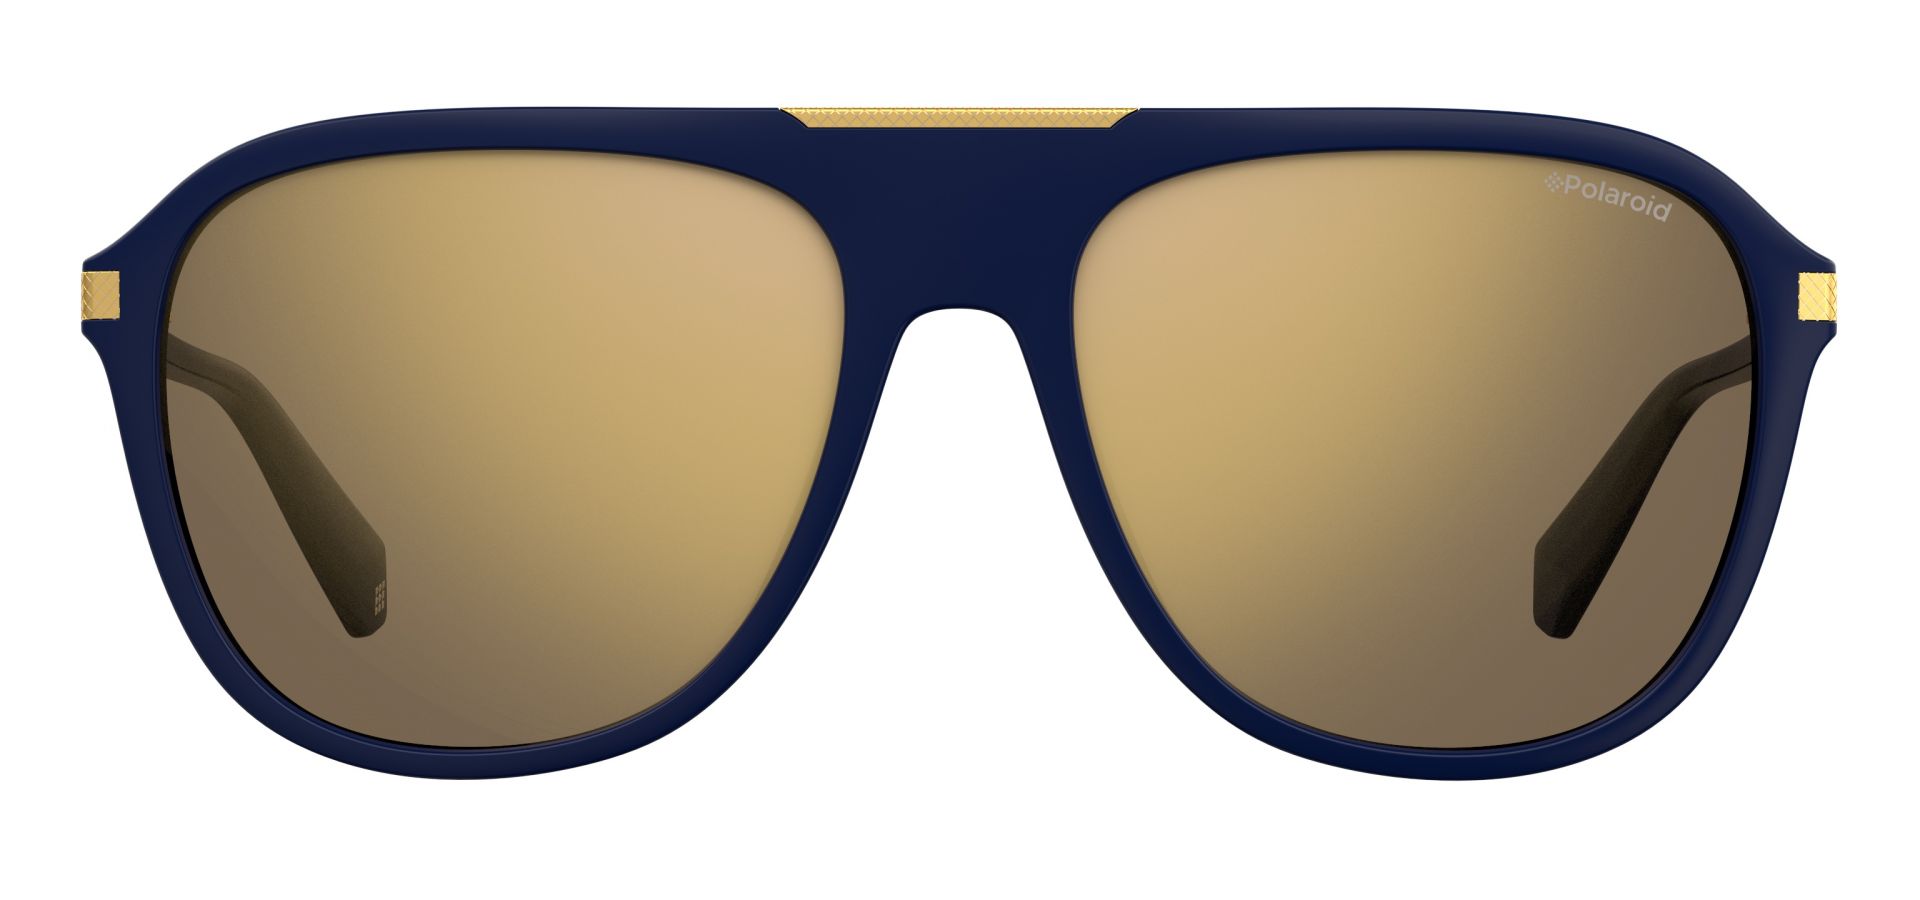 Sunčane naočale Polaroid PLD 2070/S/X: Boja: Blue Gold, Veličina: 58/18/145, Spol: muške, Materijal: acetat, Vrsta leće: polarizirane